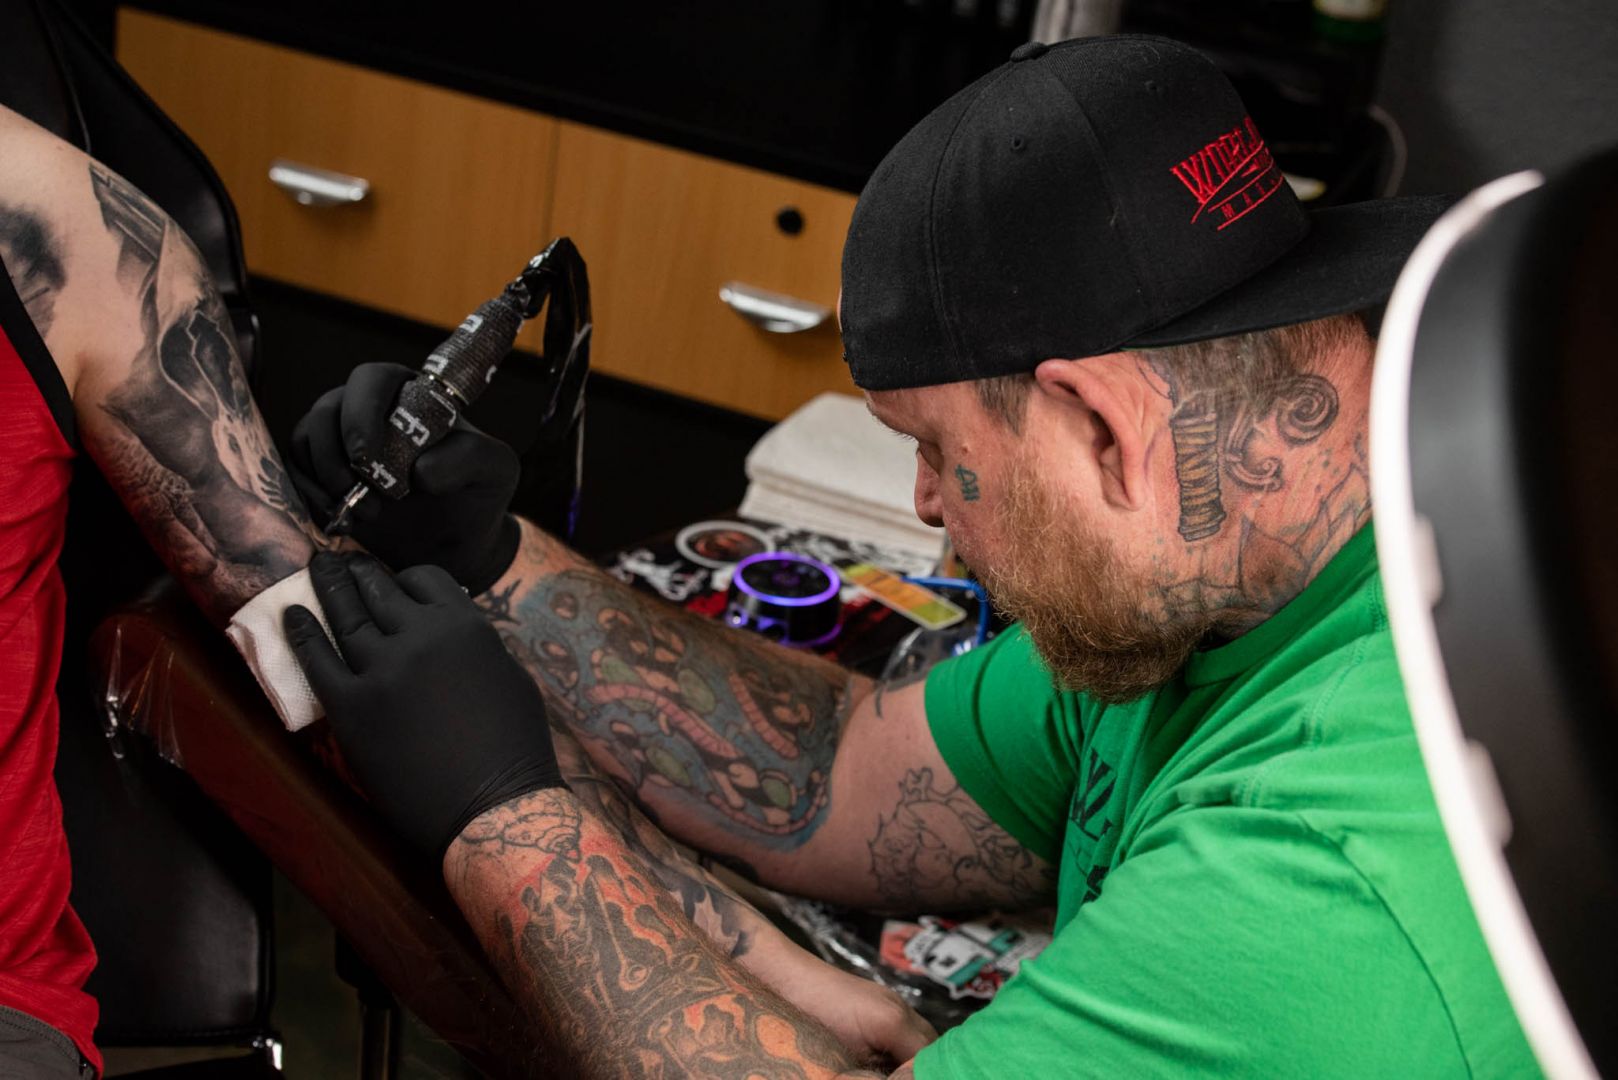 Meet Aaron Stevens Tattoo Artist SHOUTOUT DFW